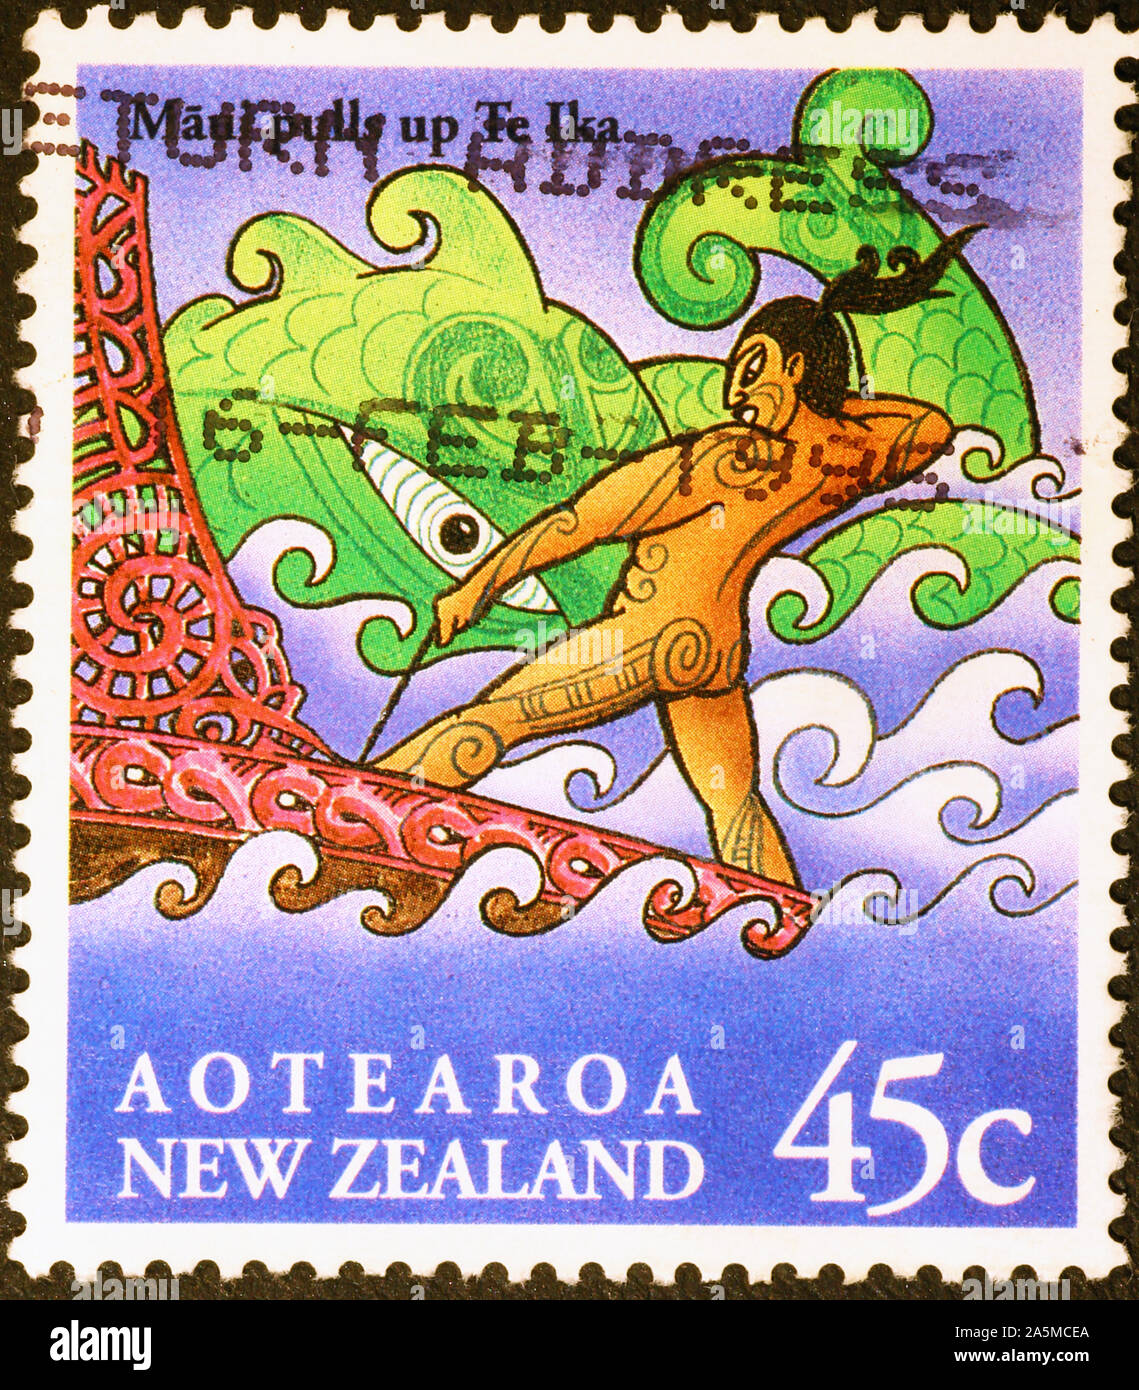 Nouvelle-zélande conte mythologique sur timbre-poste Banque D'Images